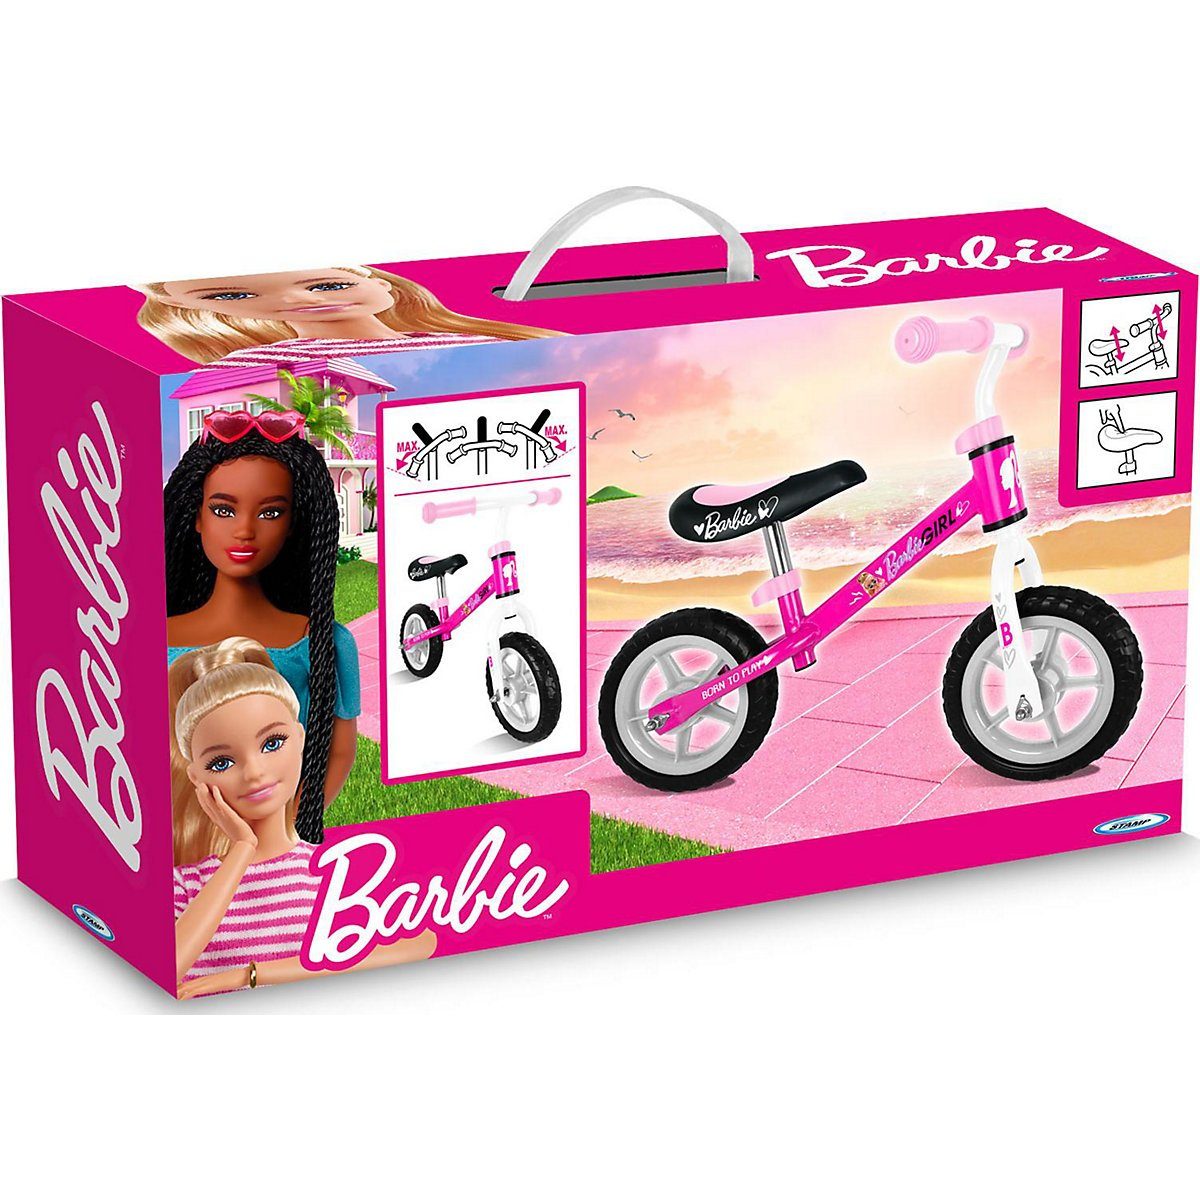 STAMP Laufrad »Laufrad Barbie Running Bike« kaufen | OTTO